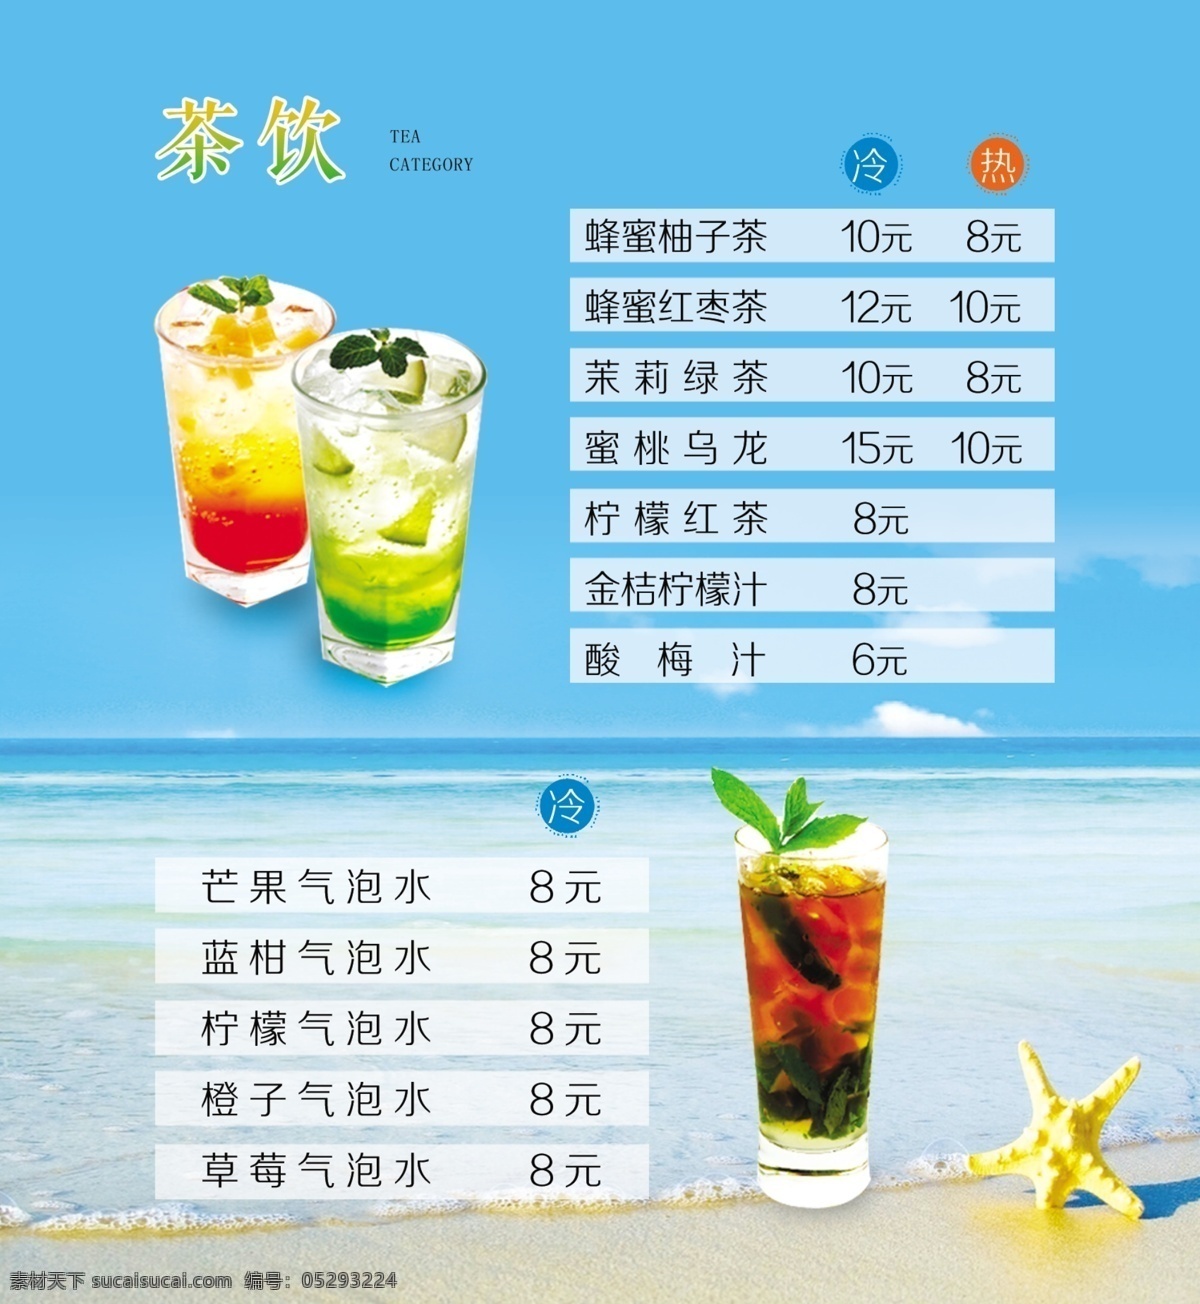 夏日 茶饮 价目表 海星 蓝色背景 小清新 海洋风 原创设计 其他原创设计